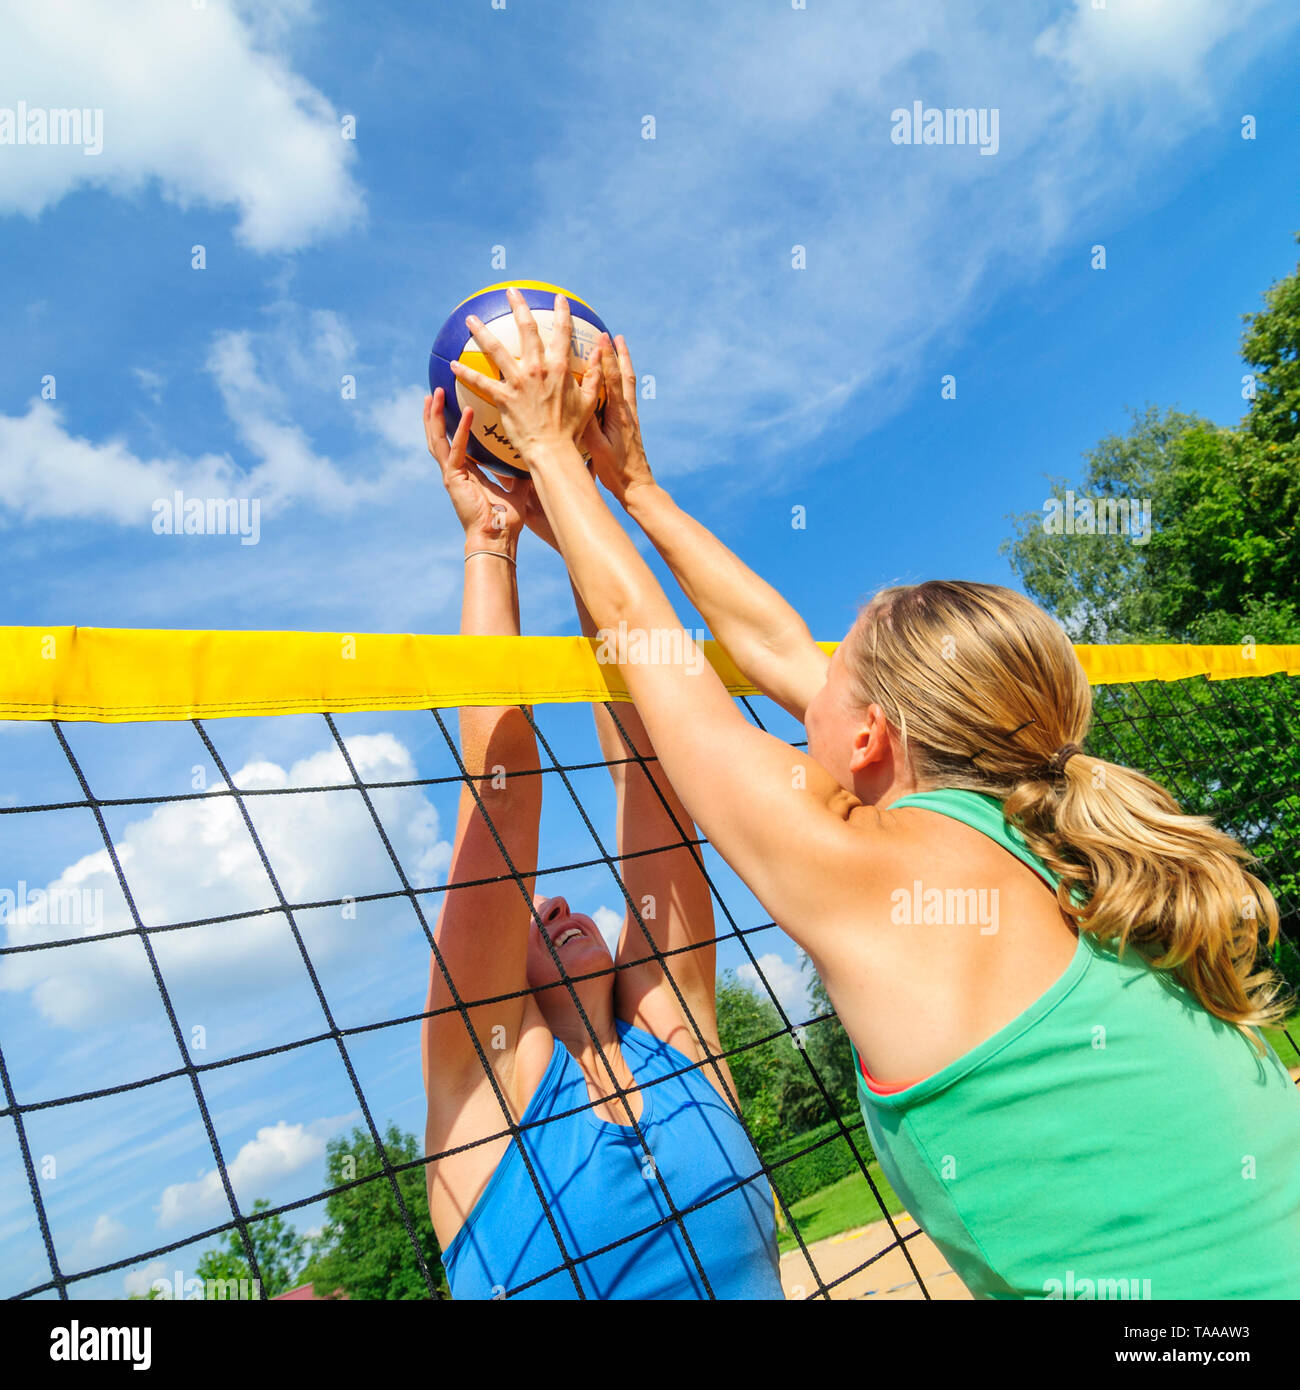 Konkurrierende Spiel auf Beachvolleyball Court am Netz Stockfoto